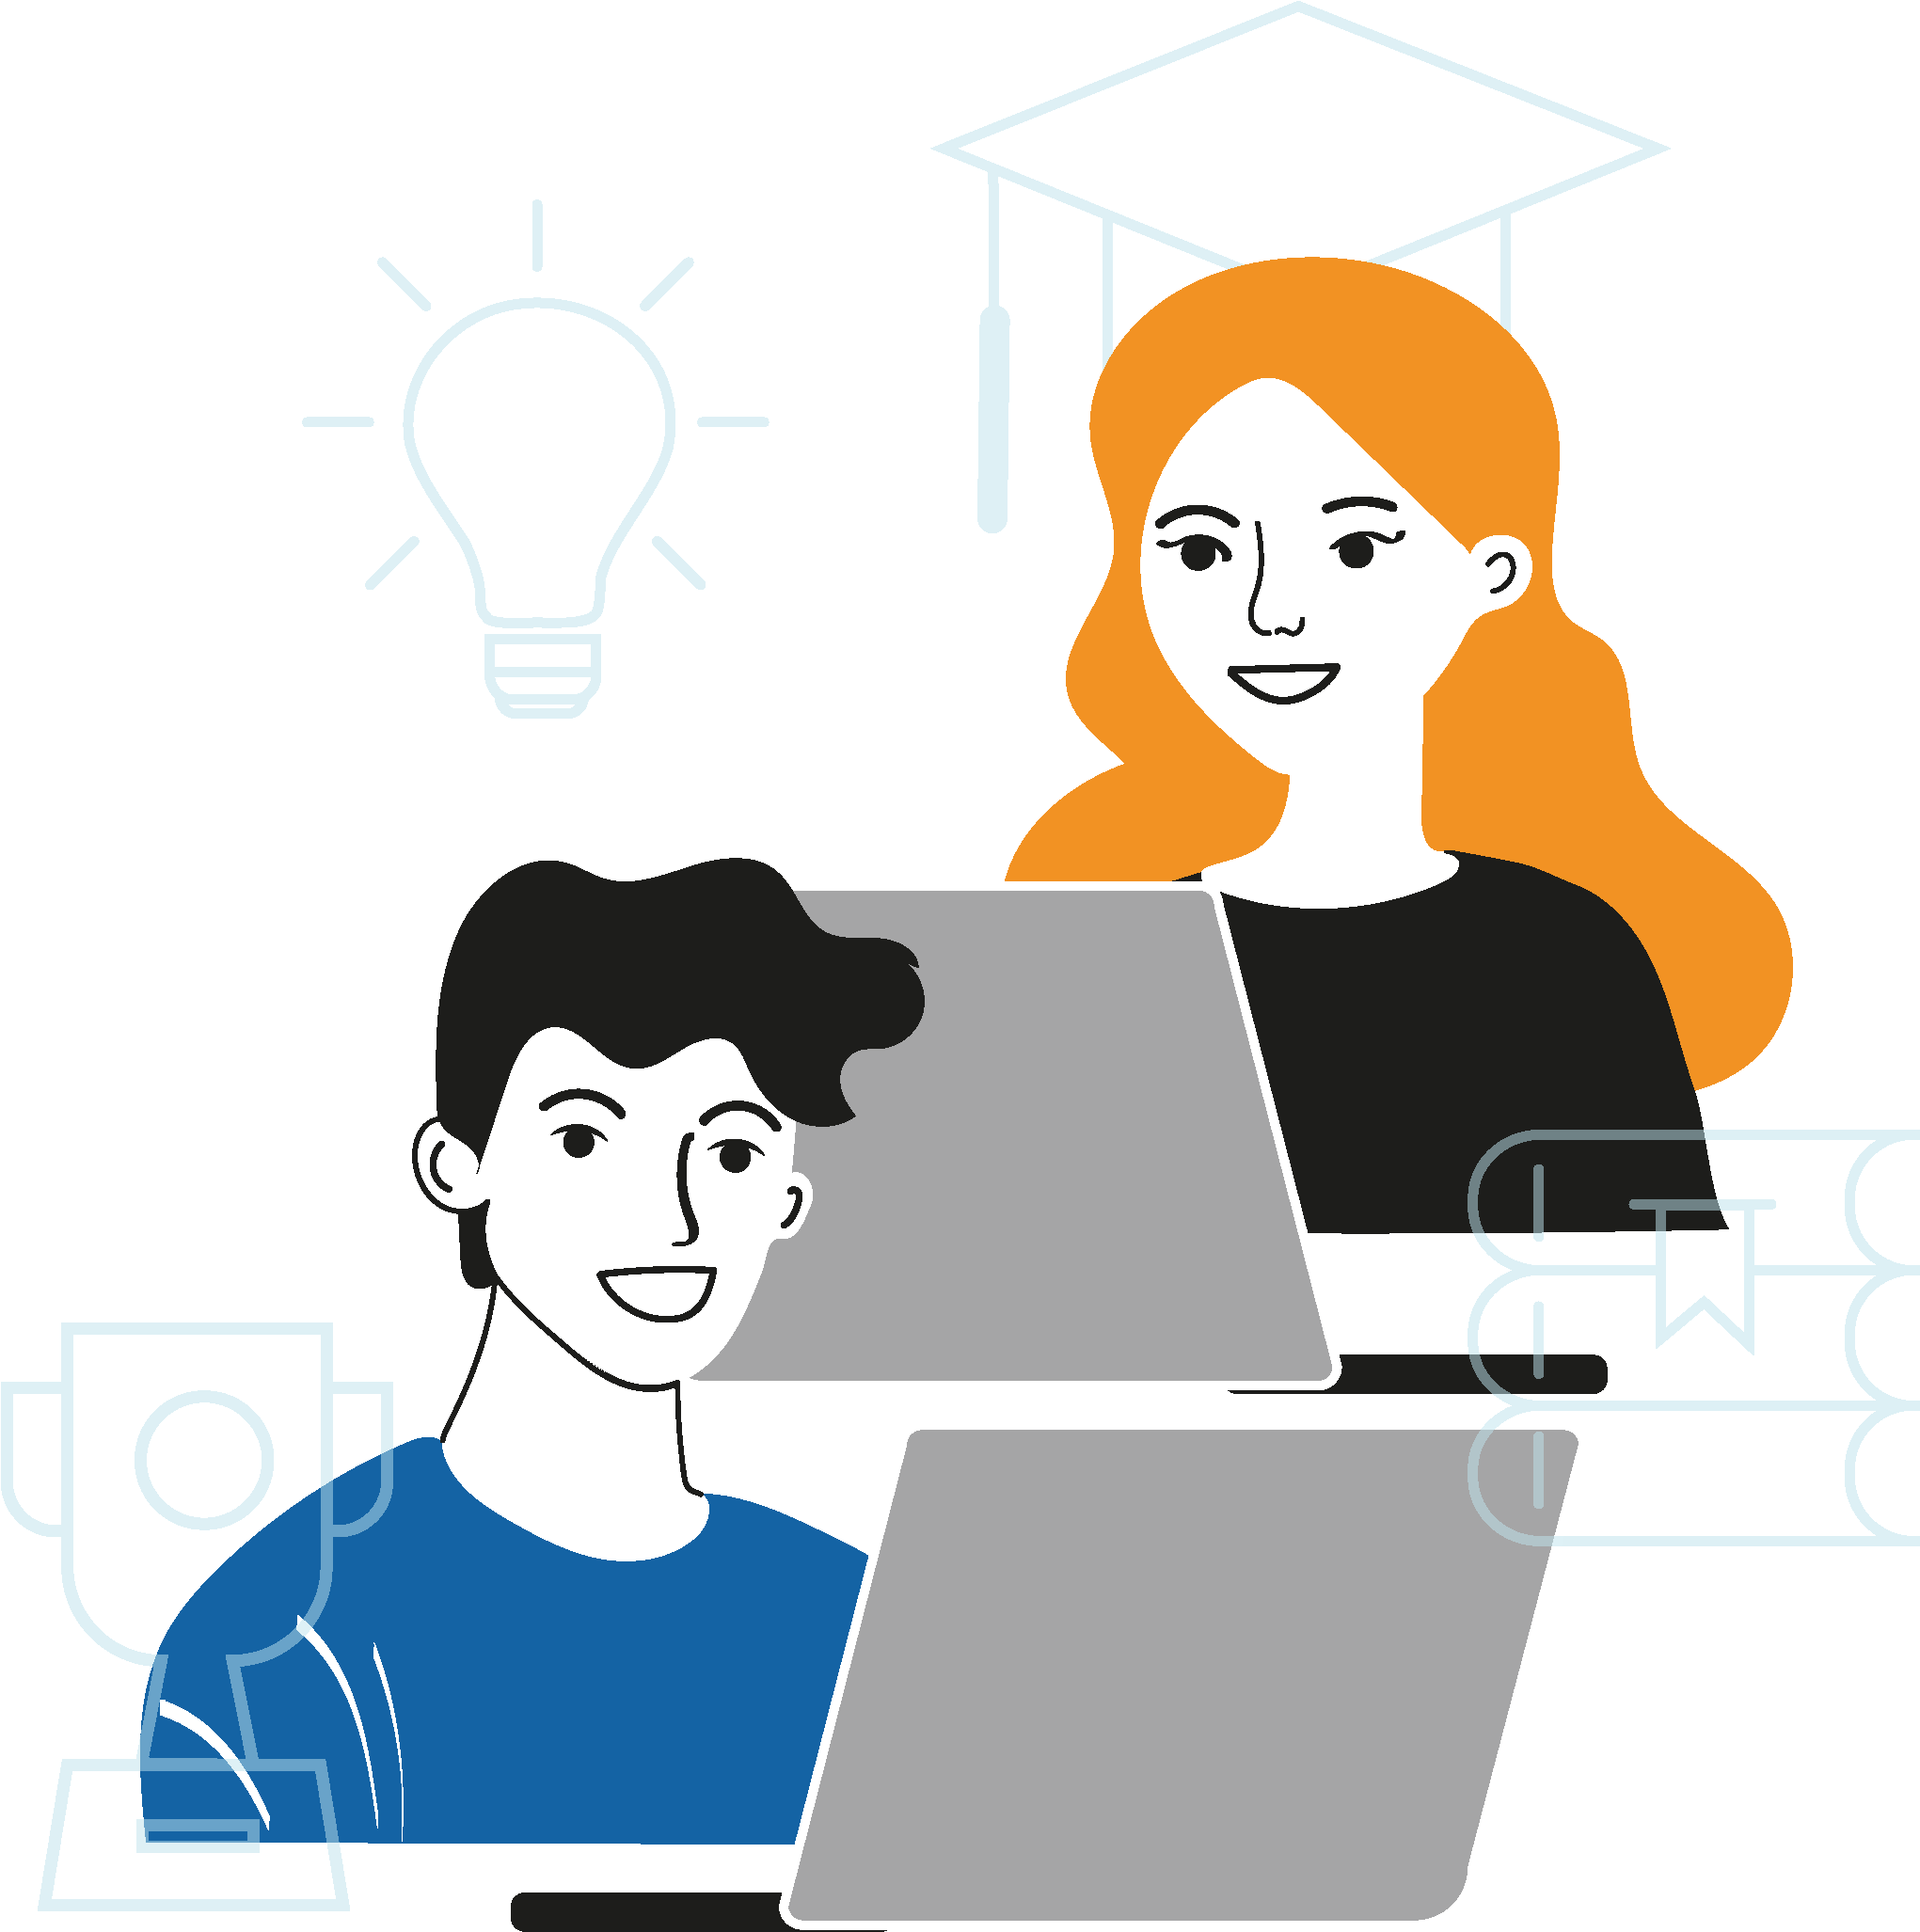 Illustration für Lernmedien aller Bildungsbereiche: Illustration mit zwei studentischen Figuren, die am Notebook arbeiten, während Symbole erfolgreicher Studienabschlüsse sie umgeben.